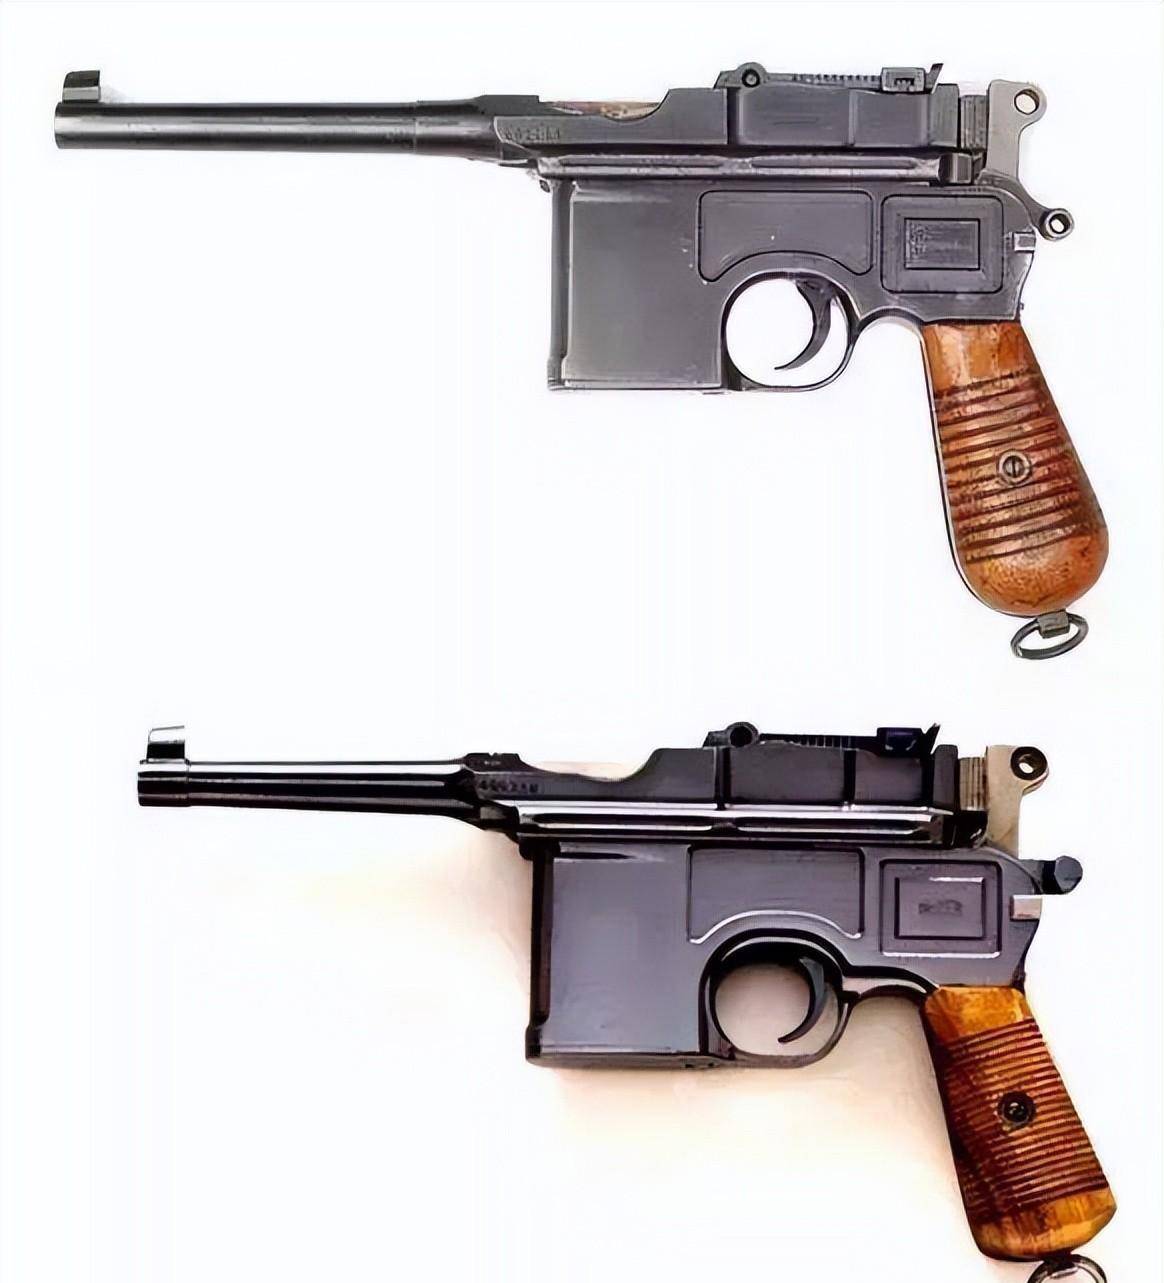 毛瑟标准型步枪图片